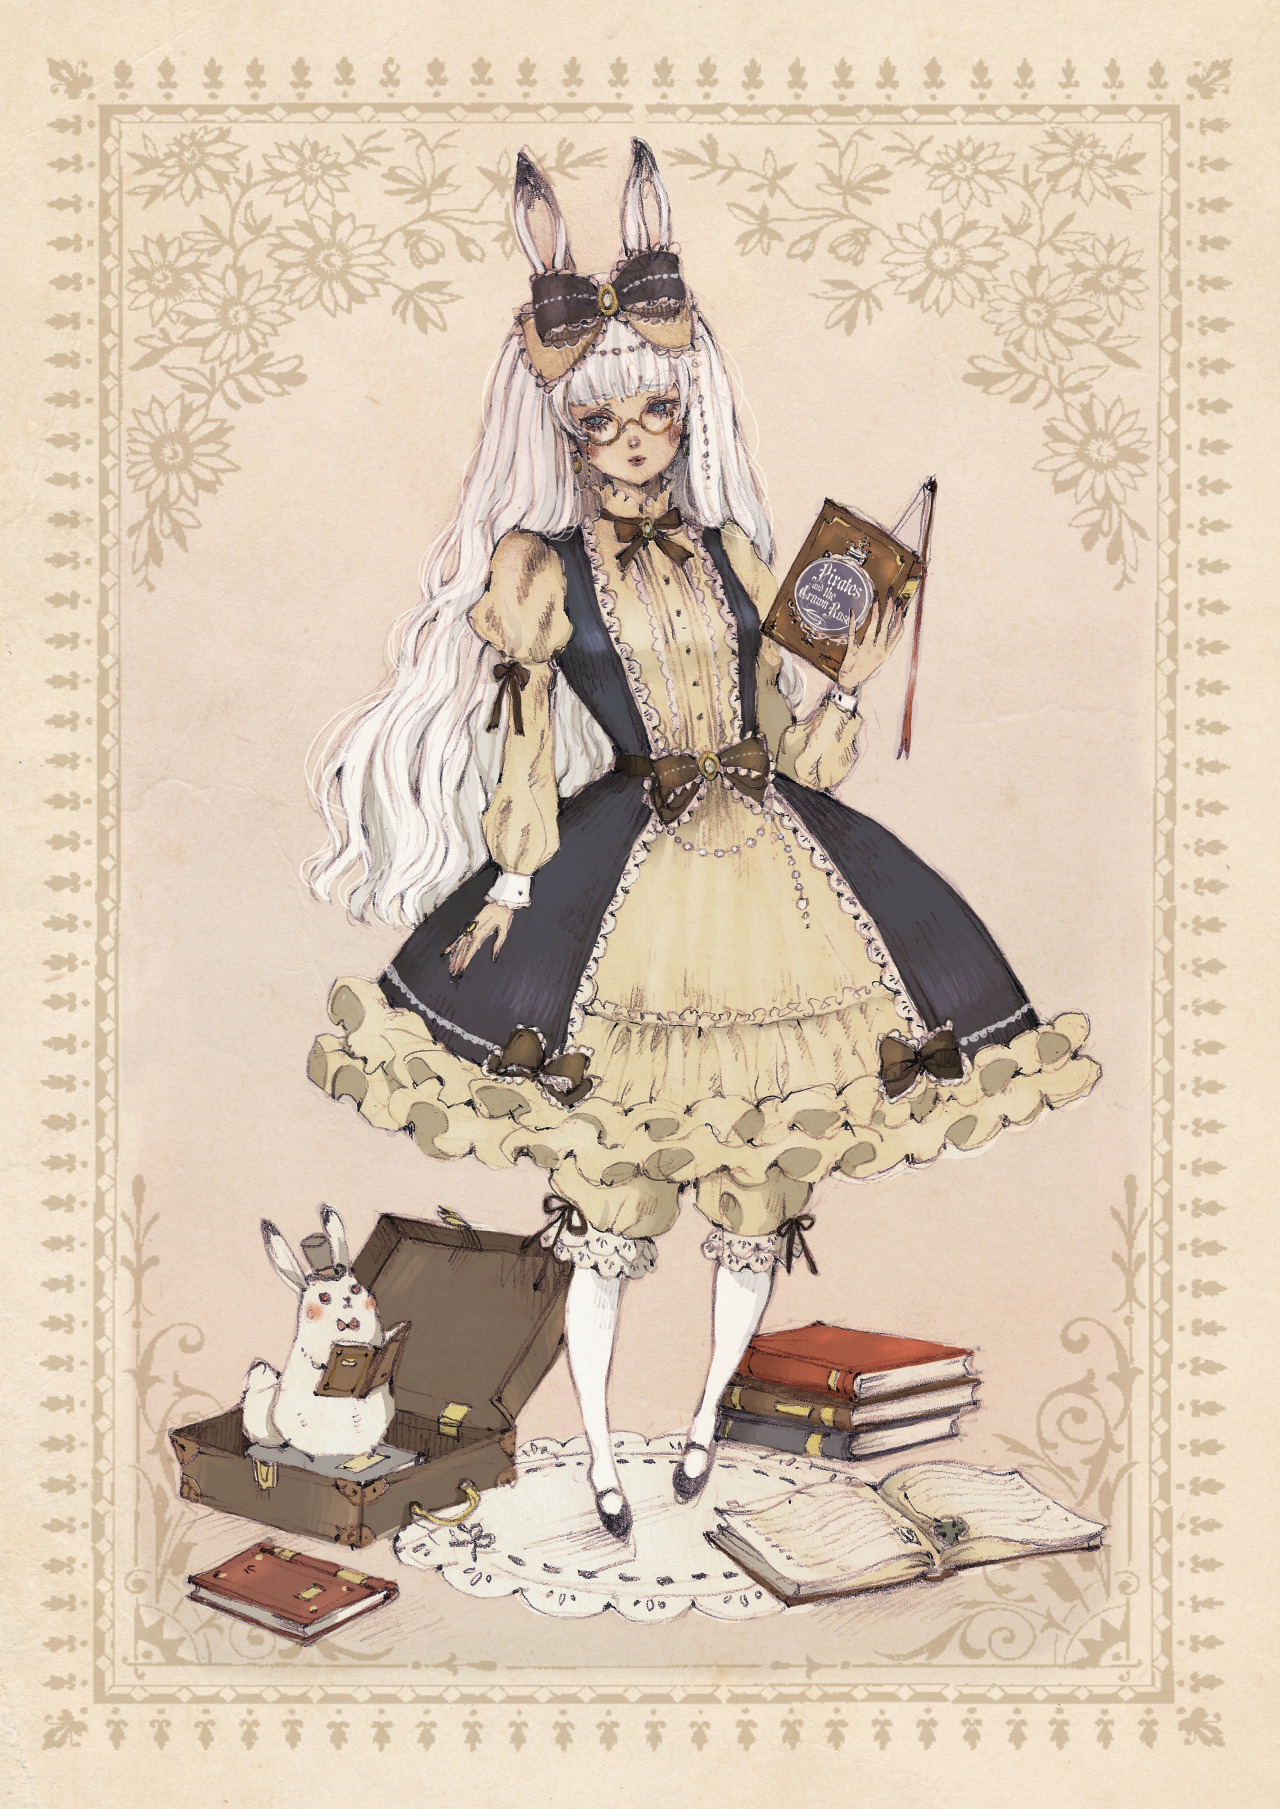 Фото Белокурая девушка с кроличьими ушками, одетая в викторианском стиле, с книгой в руке, стоит на белом кружевном коврике, рядом лежат книги и чемодан, в котором сидит белый кролик в шляпе-цилиндре, с маленькой книжечкой в лапках, art by Loputyn